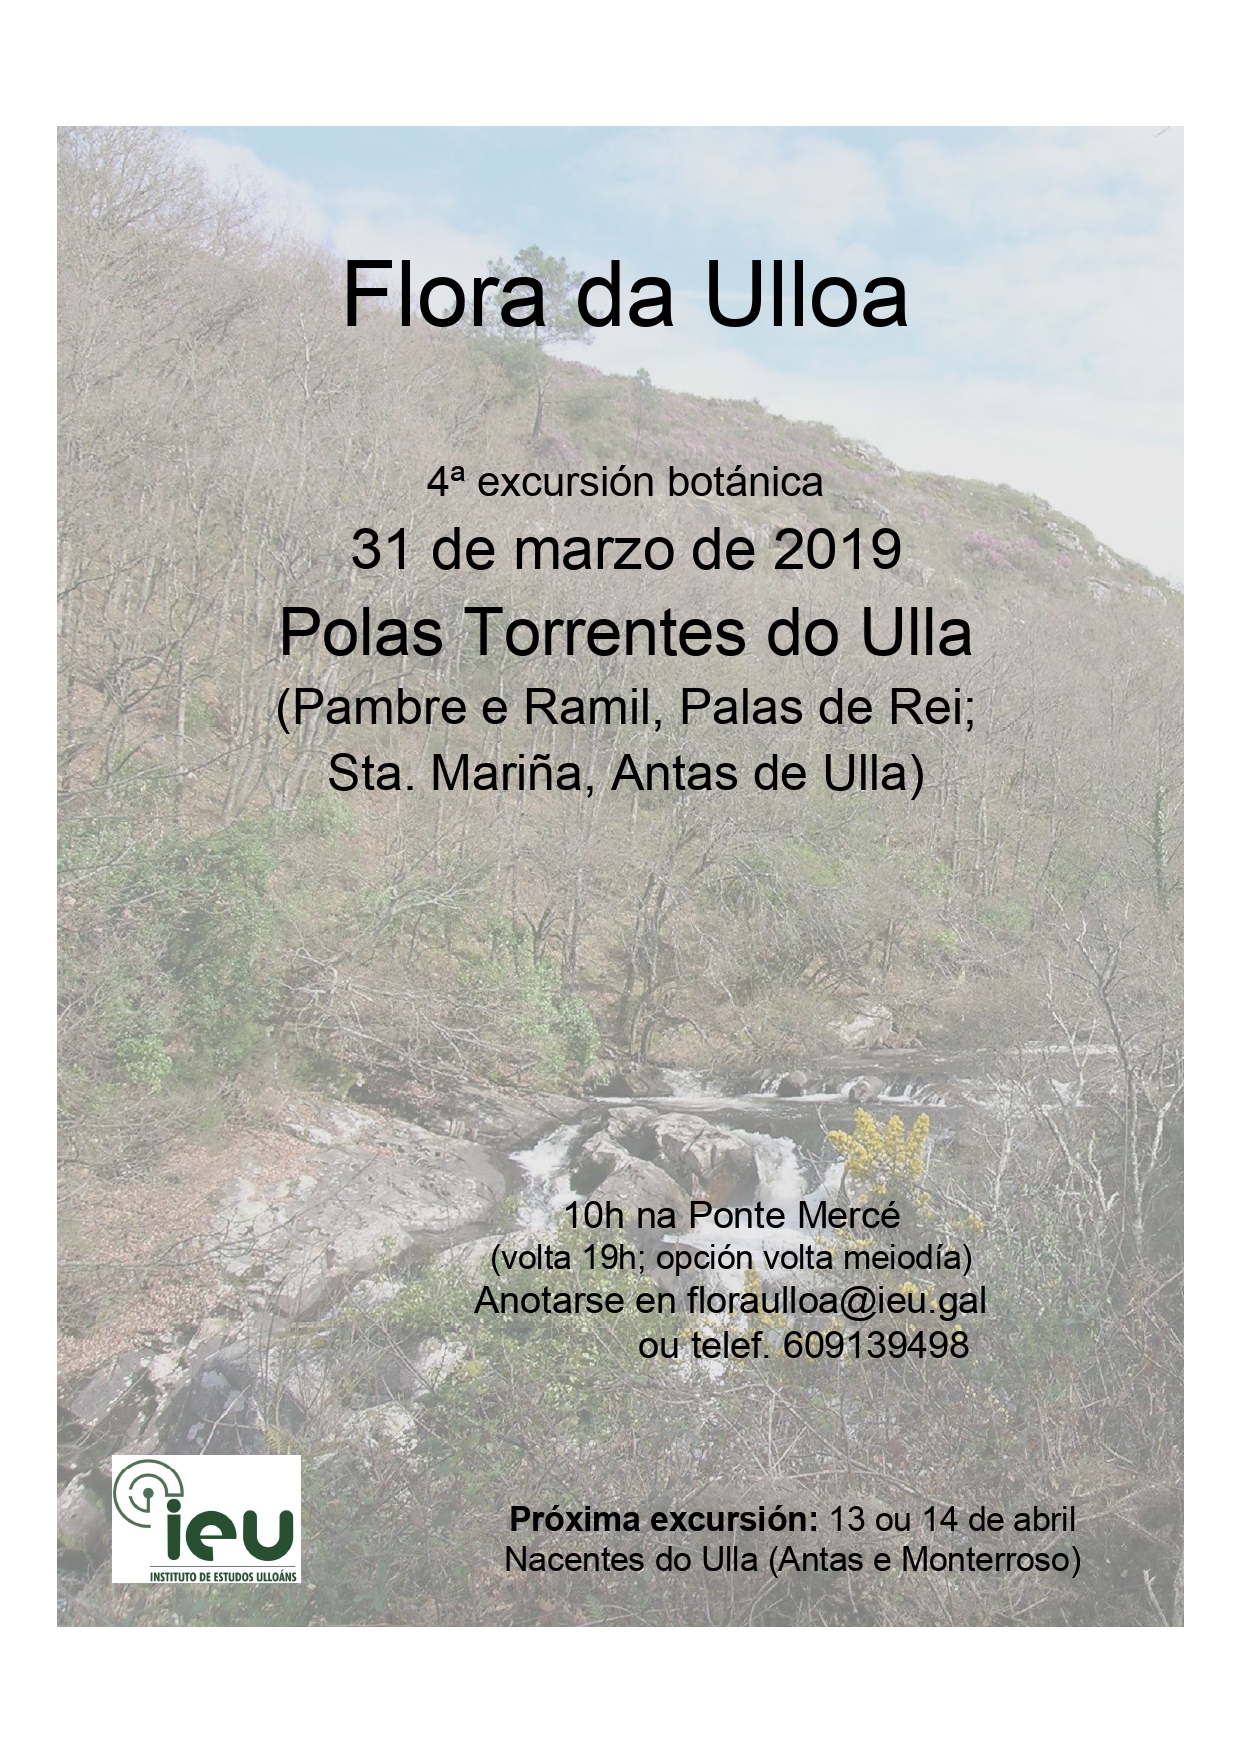 4ª excursión Flora da Ulloa, Instituto de Estudos Ulloáns